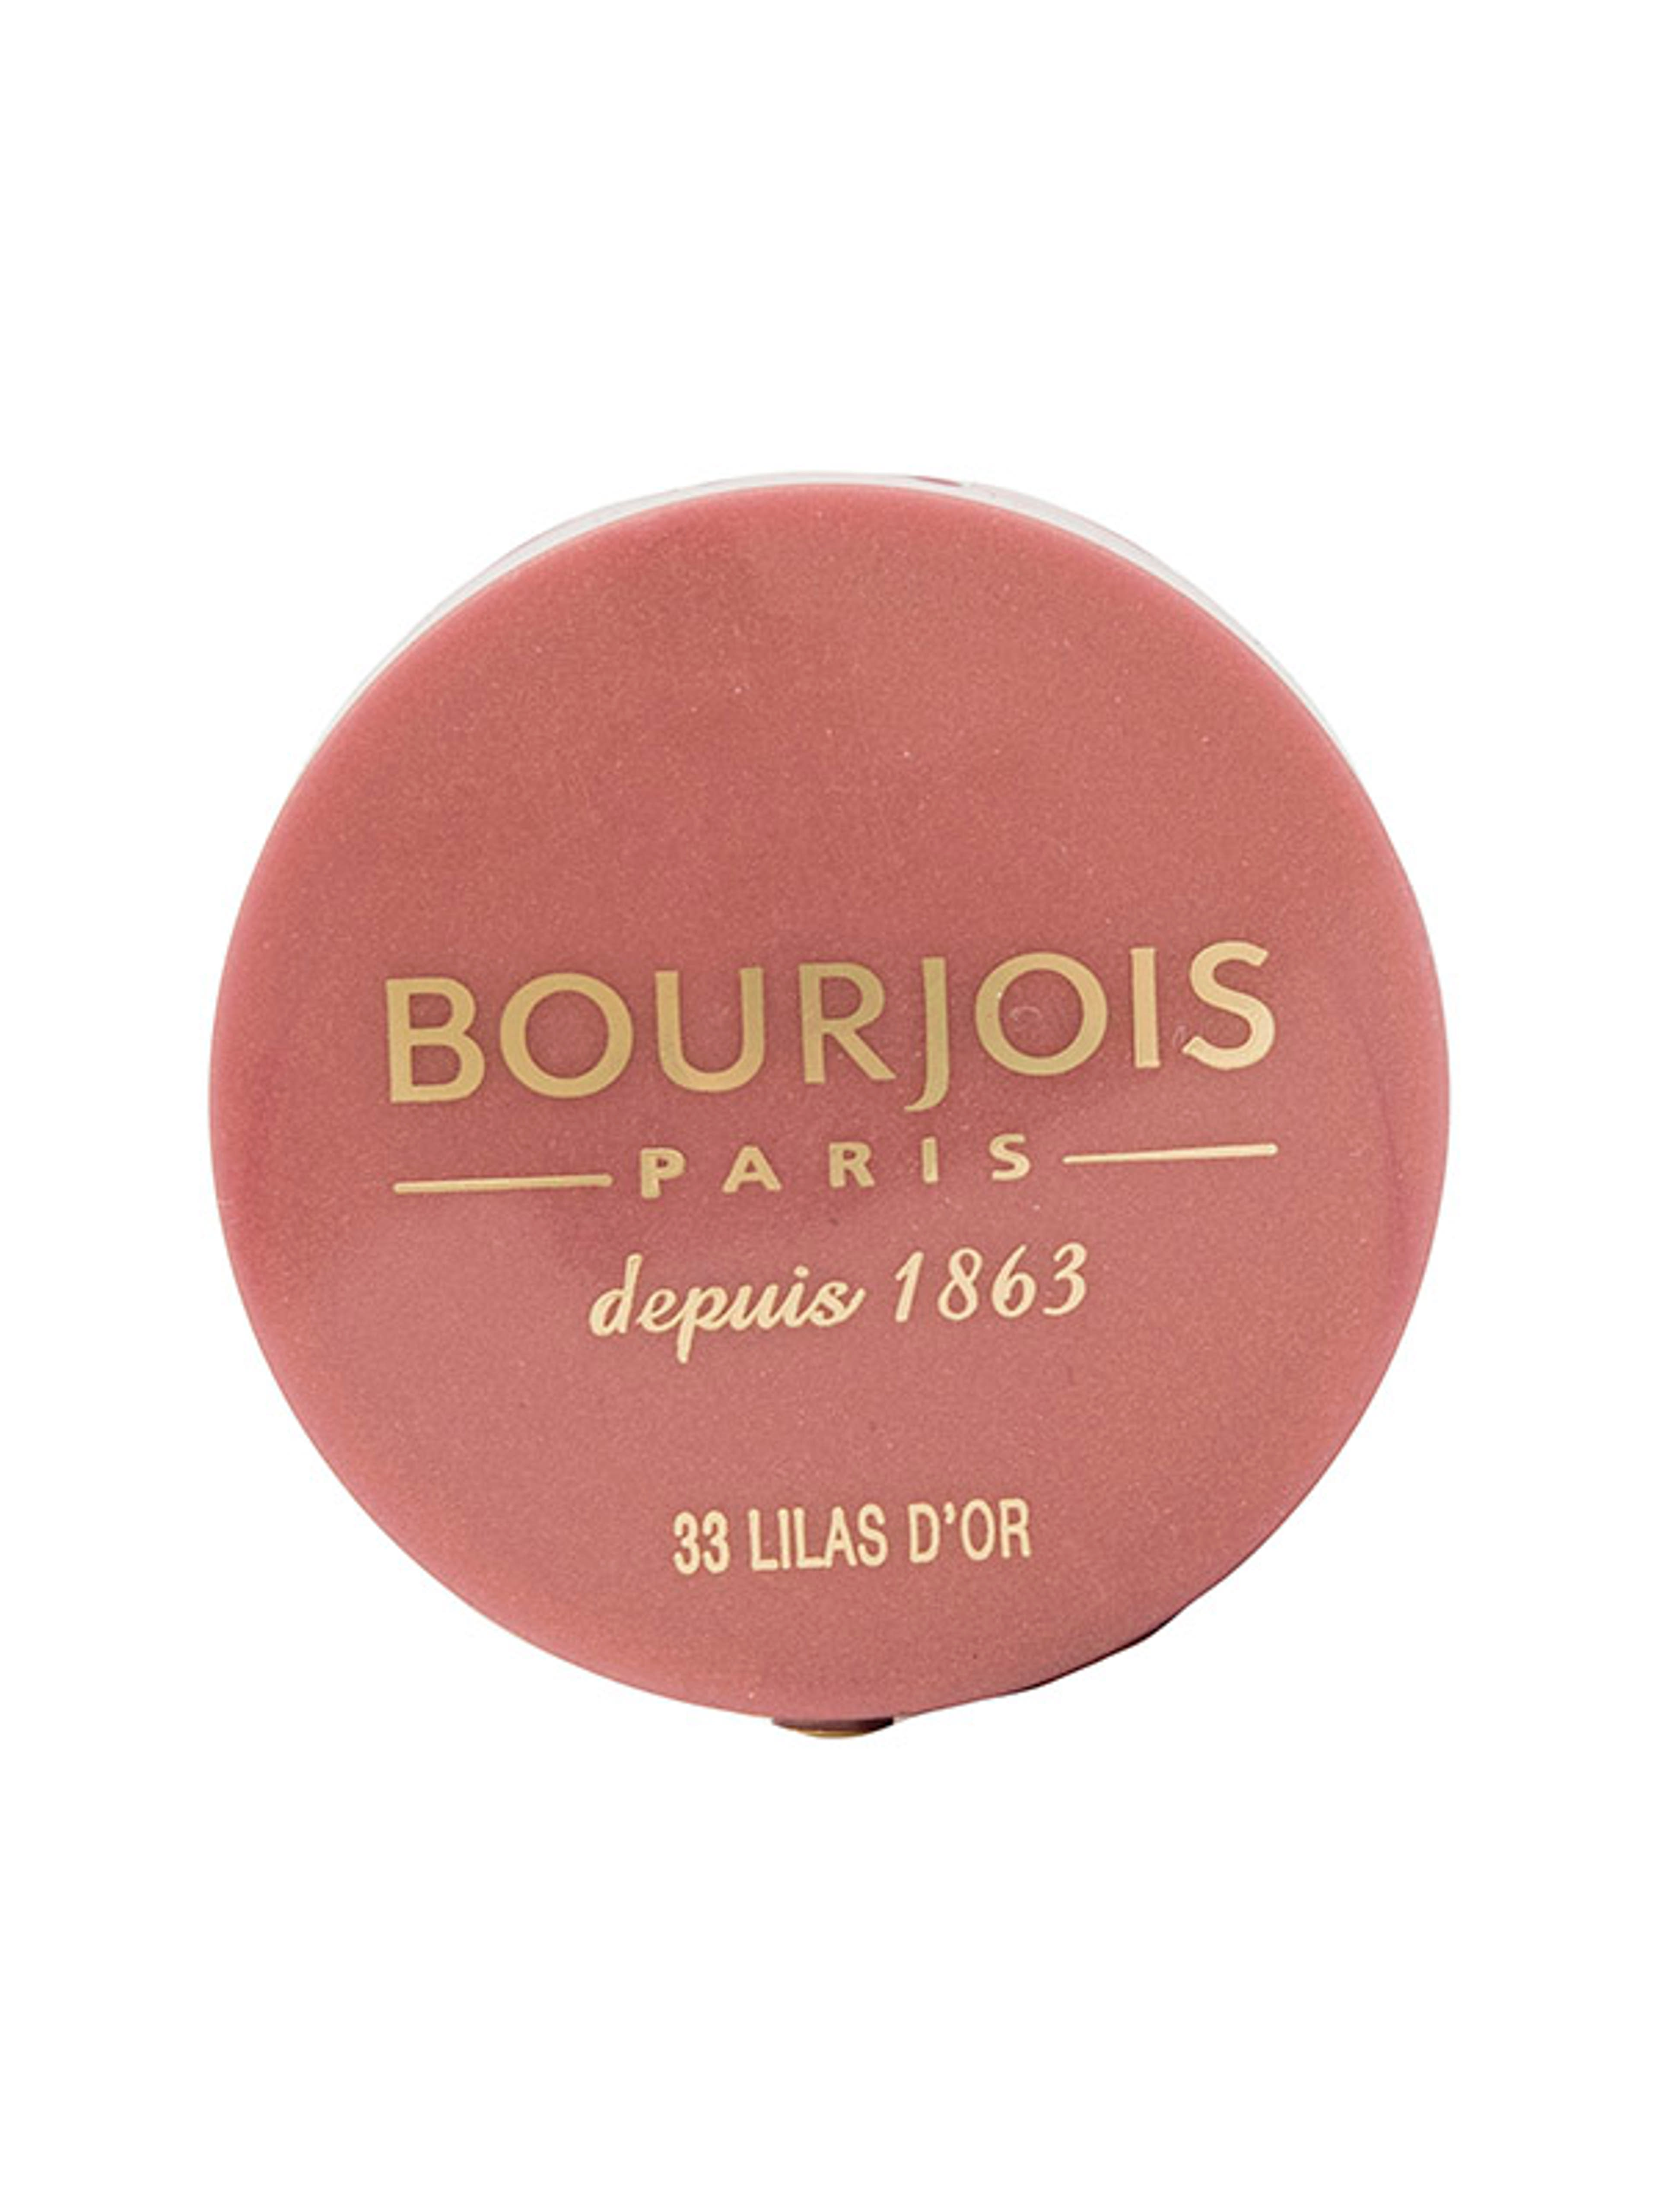 Bourjois pirosító little round pot /33 - 1 db